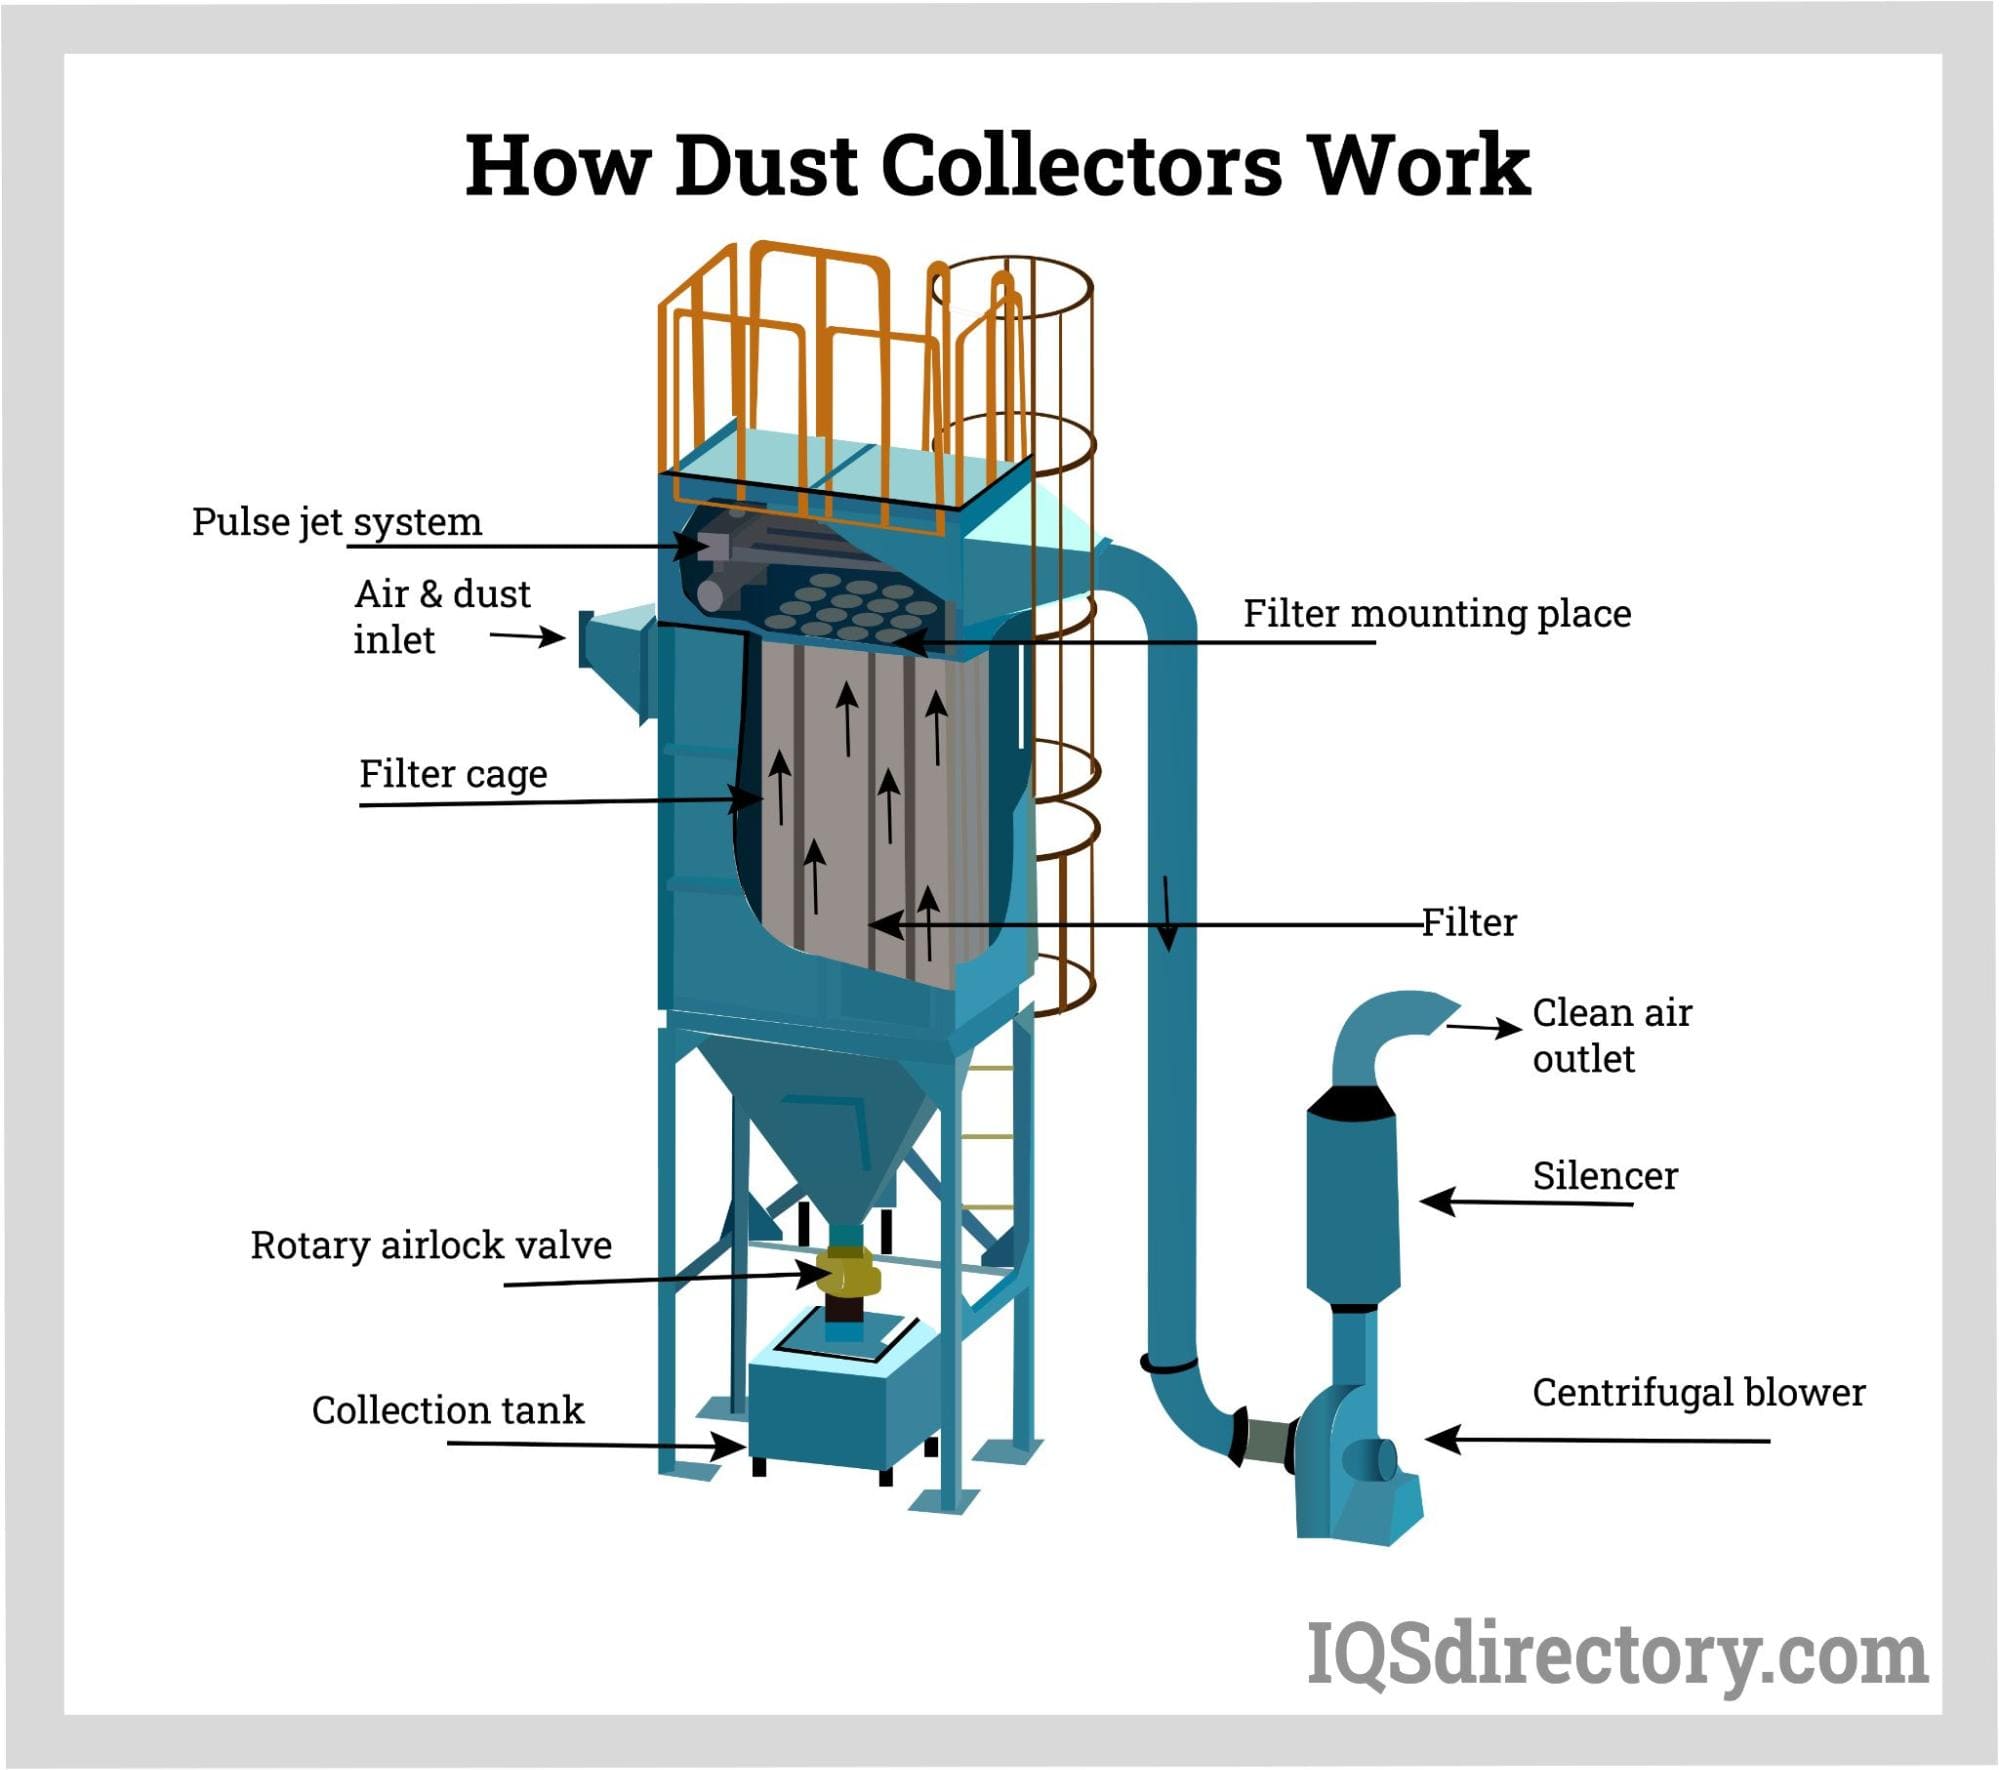 How Dust Collectors Work